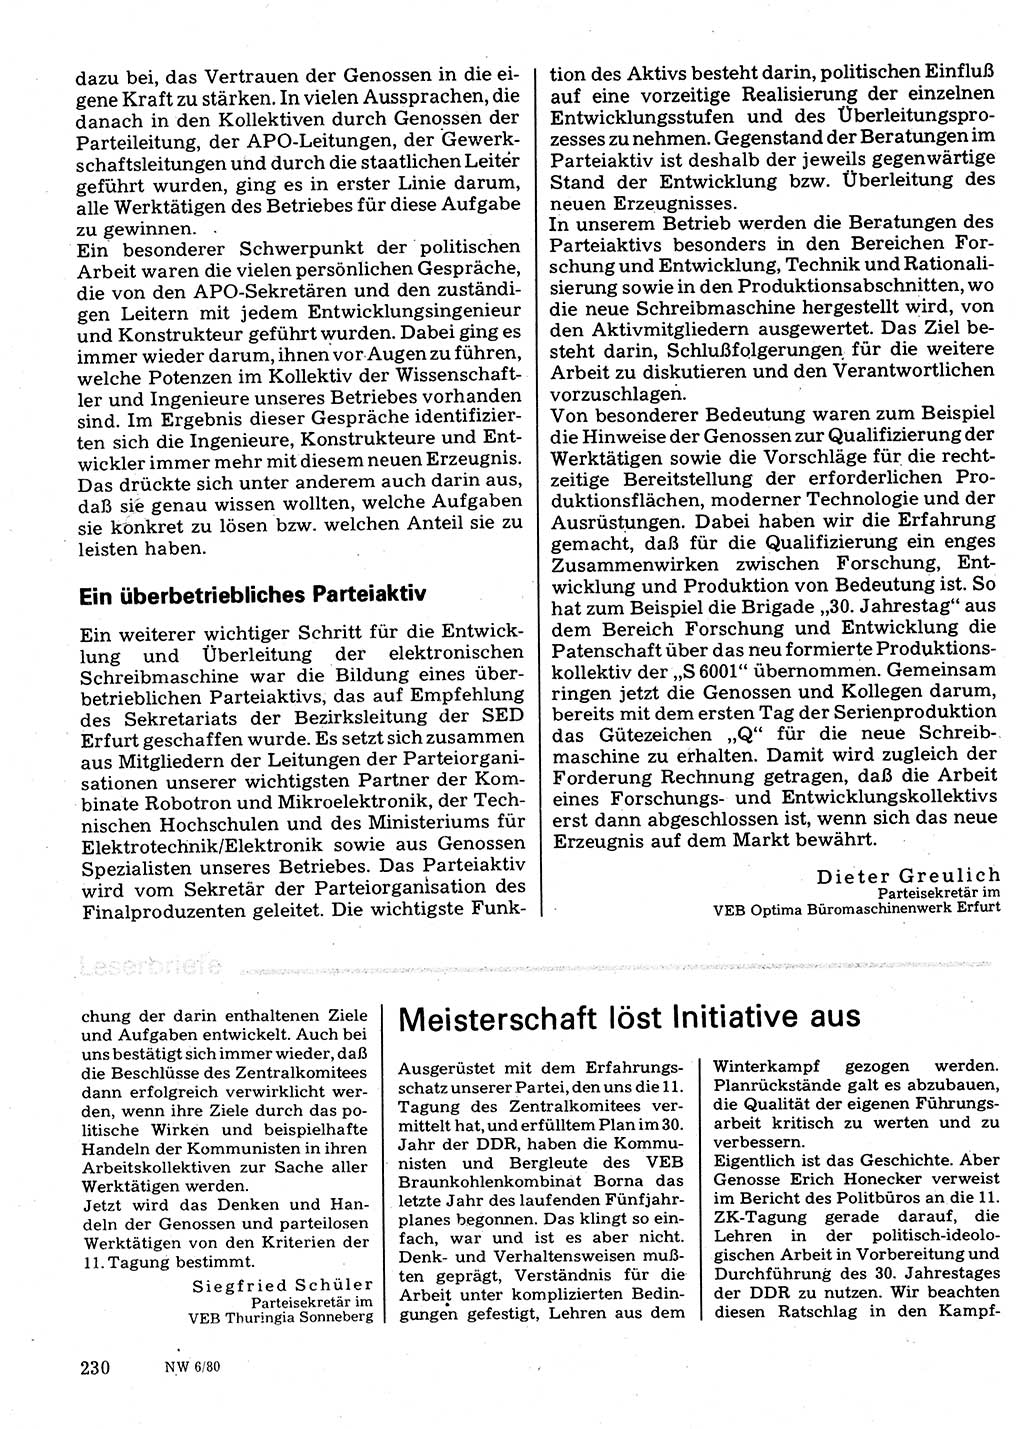 Neuer Weg (NW), Organ des Zentralkomitees (ZK) der SED (Sozialistische Einheitspartei Deutschlands) für Fragen des Parteilebens, 35. Jahrgang [Deutsche Demokratische Republik (DDR)] 1980, Seite 230 (NW ZK SED DDR 1980, S. 230)